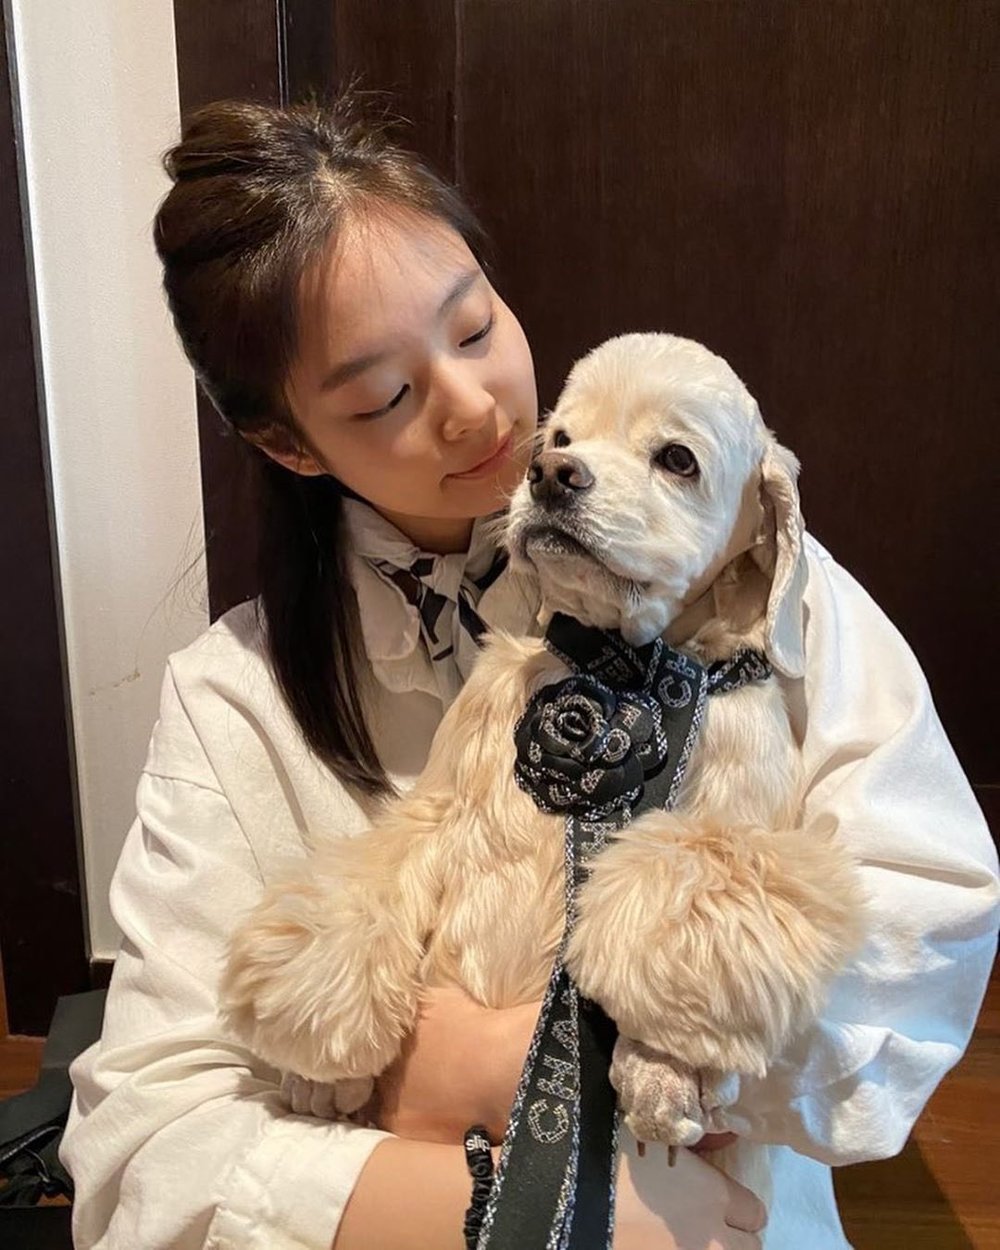  
Cô nàng lấy dây gói quà và hoa trà Chanel để làm phụ kiện sang chảnh cho cún cưng. (Ảnh: Instagram @jennierubyjane)